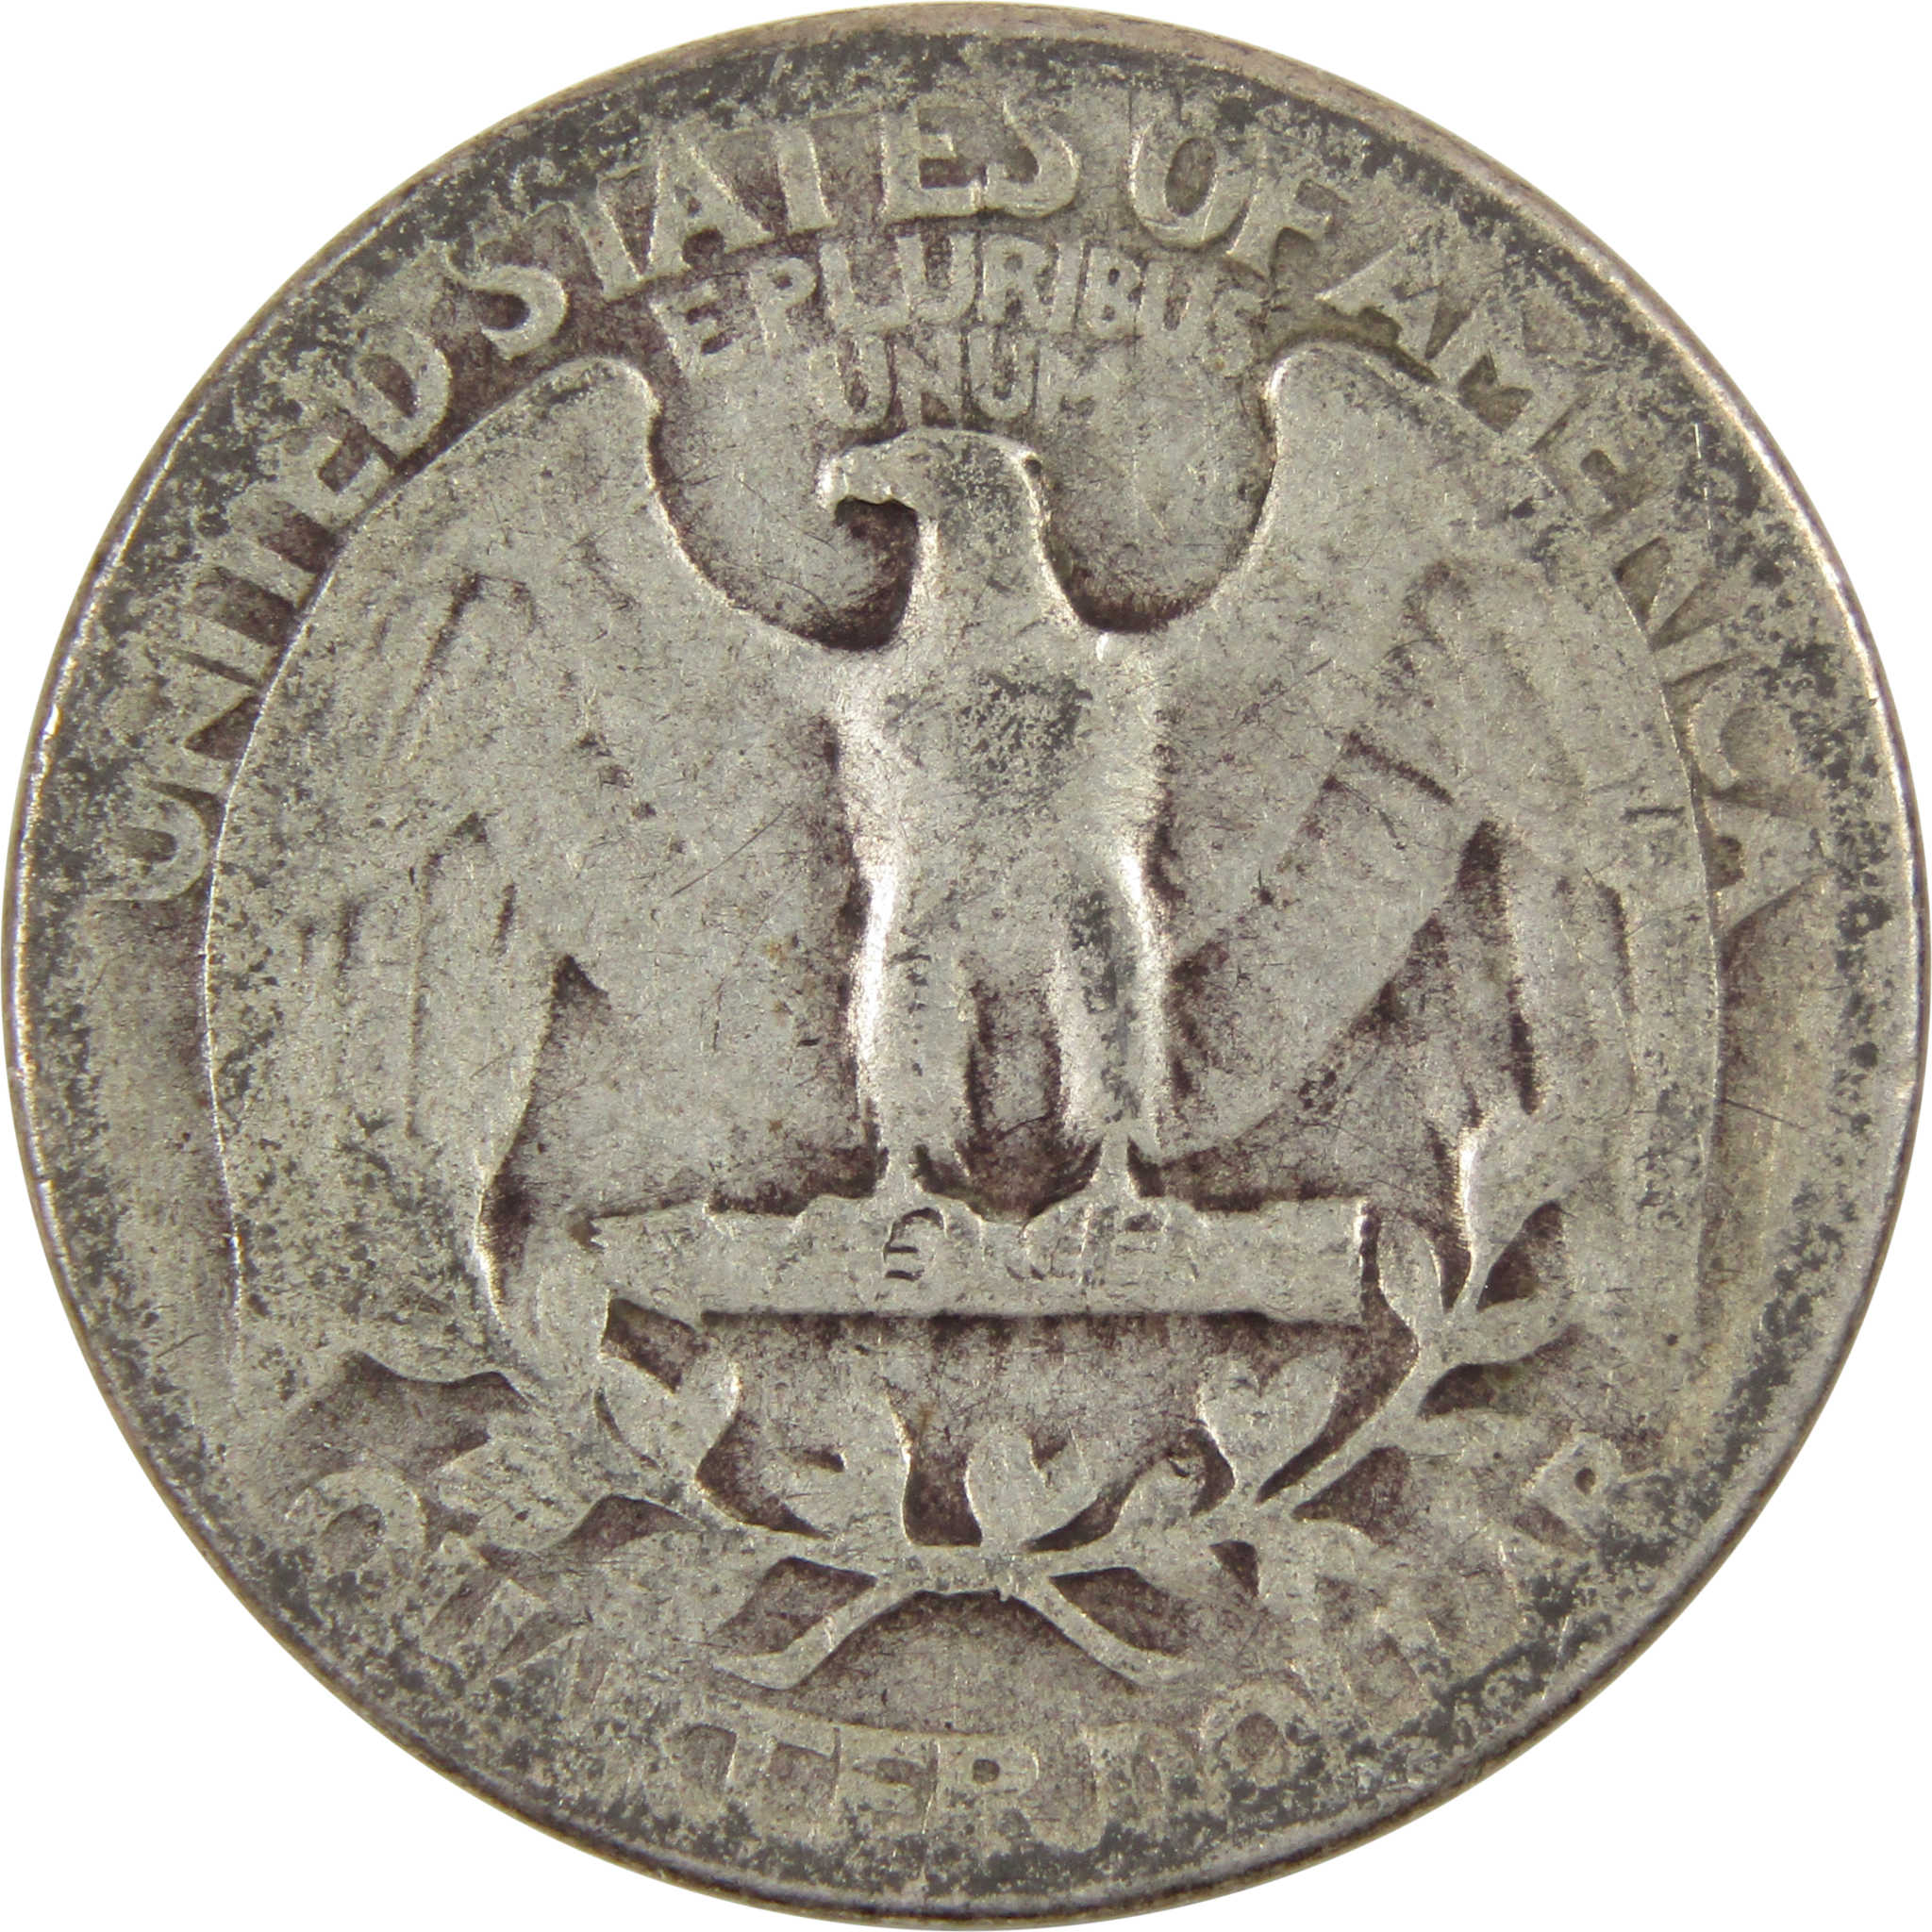 1944 Washington Quarter AG About Good 90% Silver 25c Coin